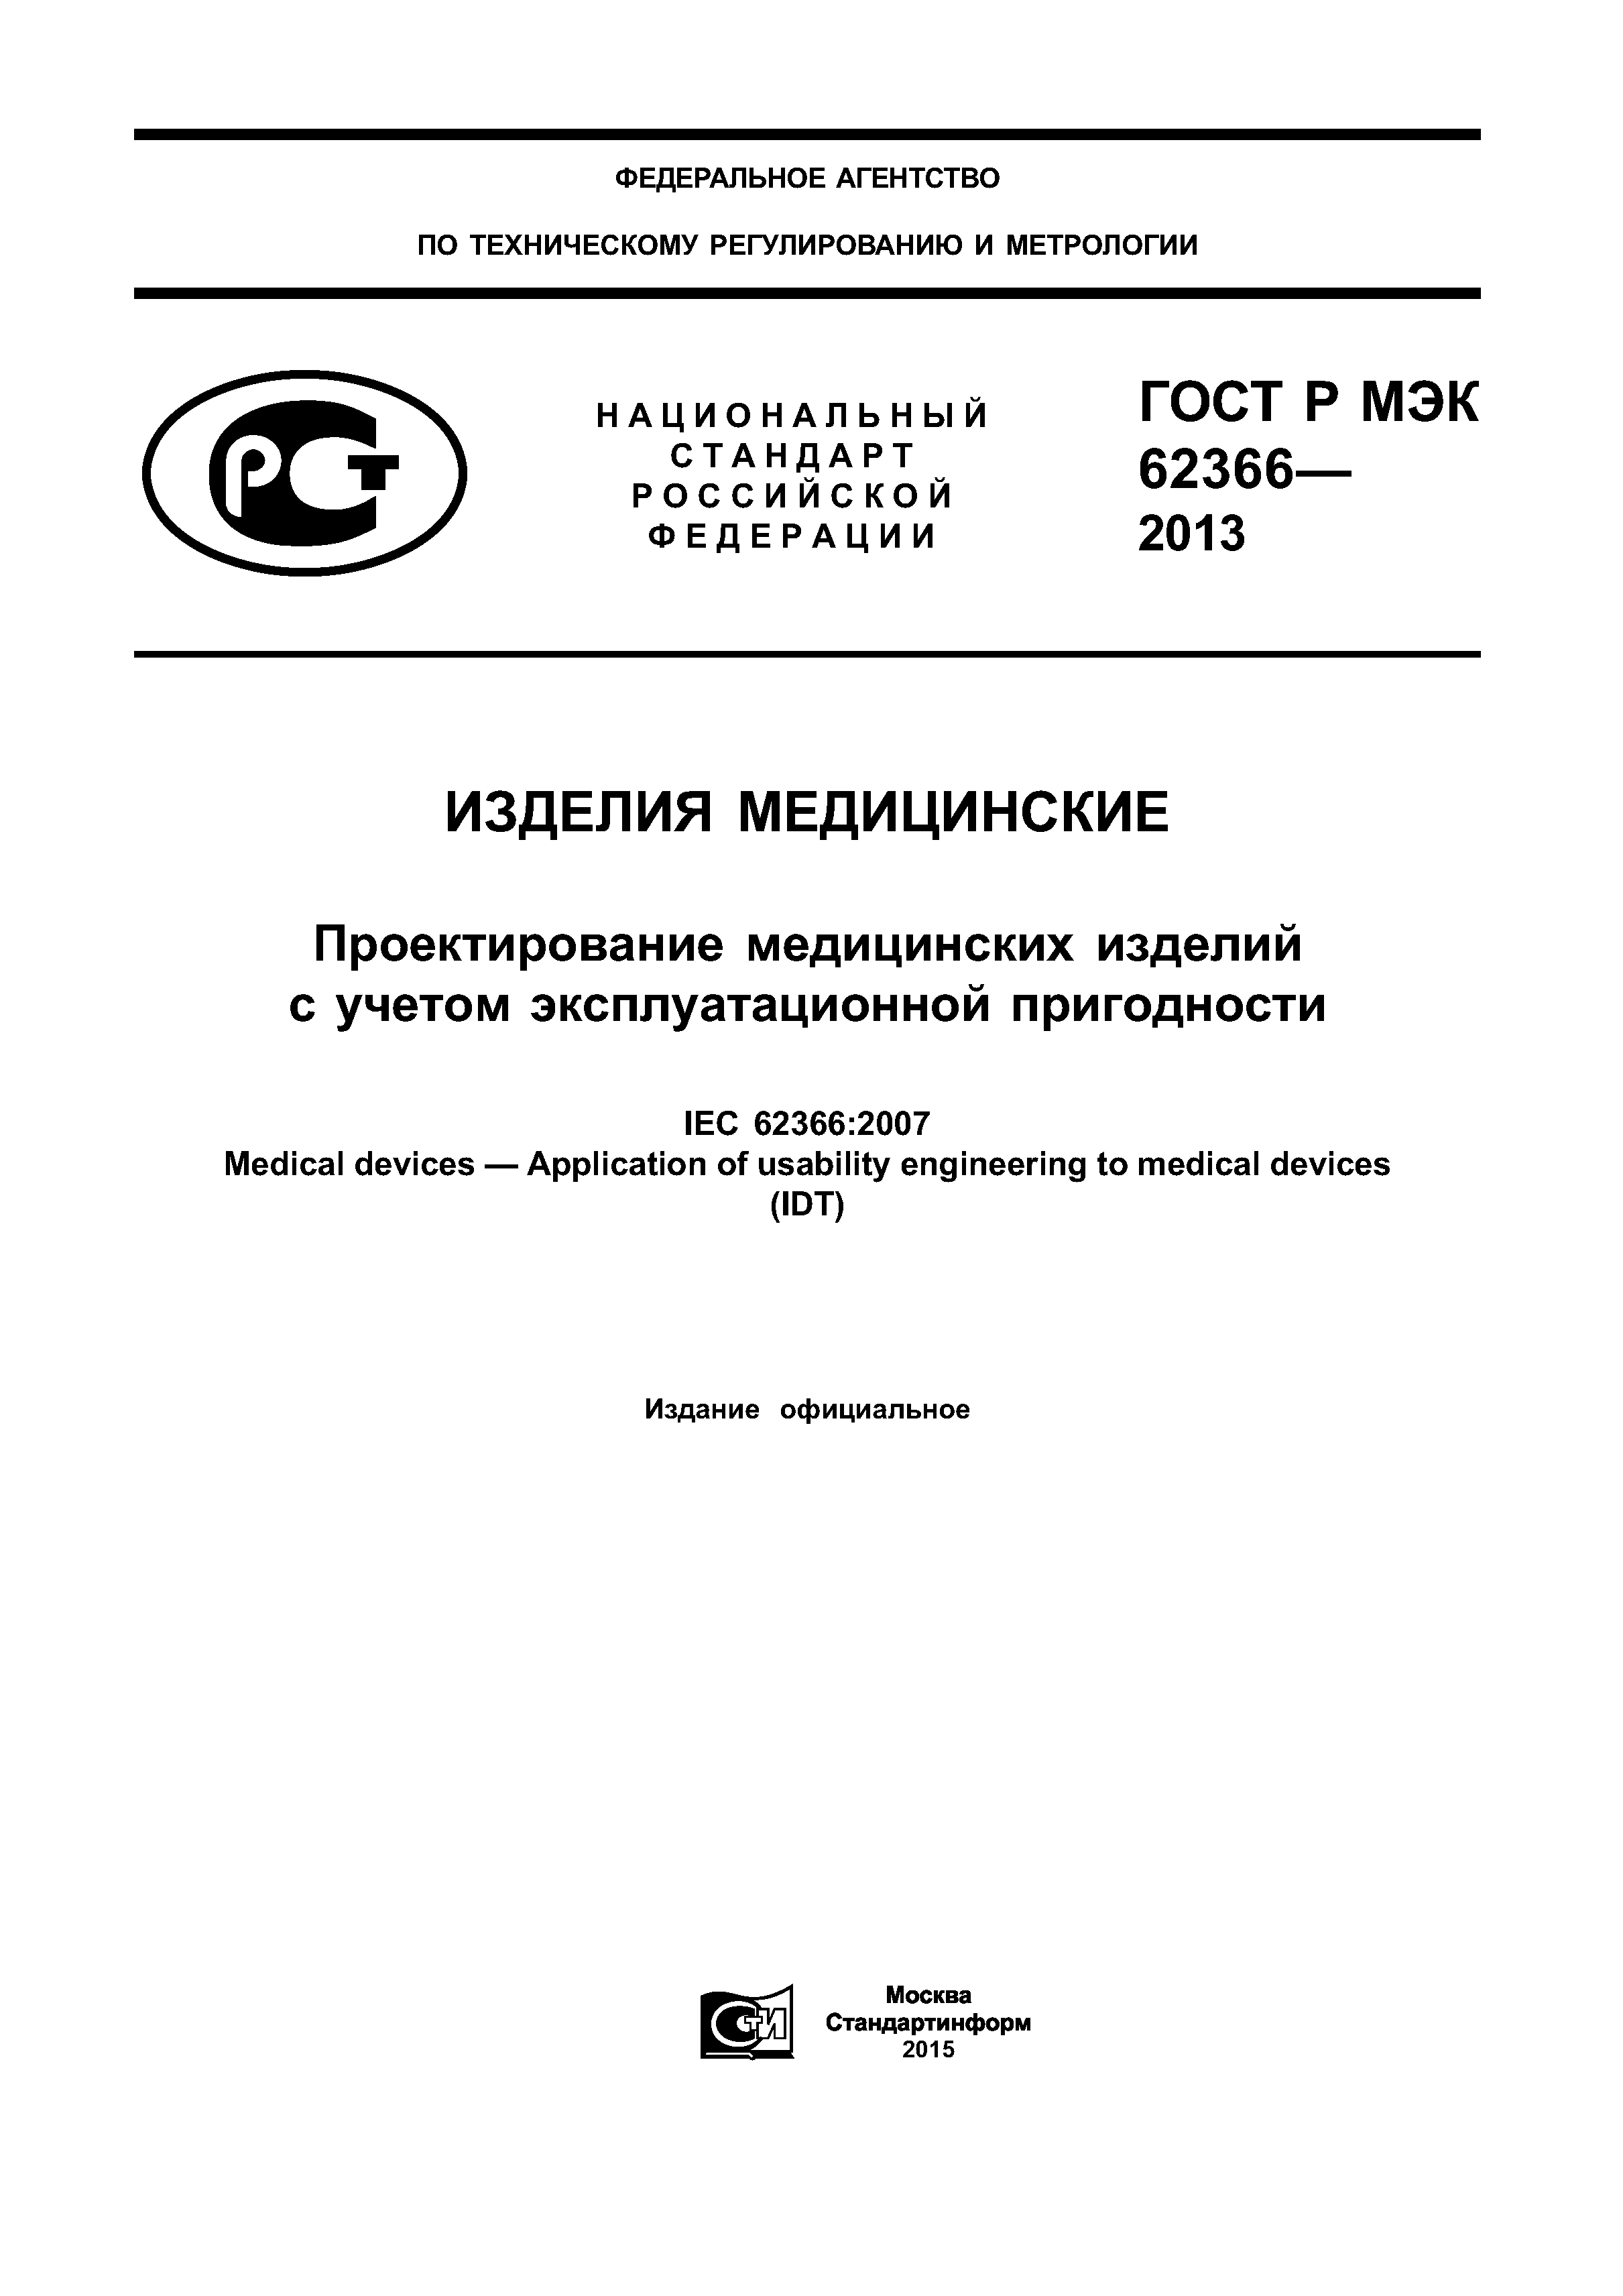 ГОСТ Р МЭК 62366-2013